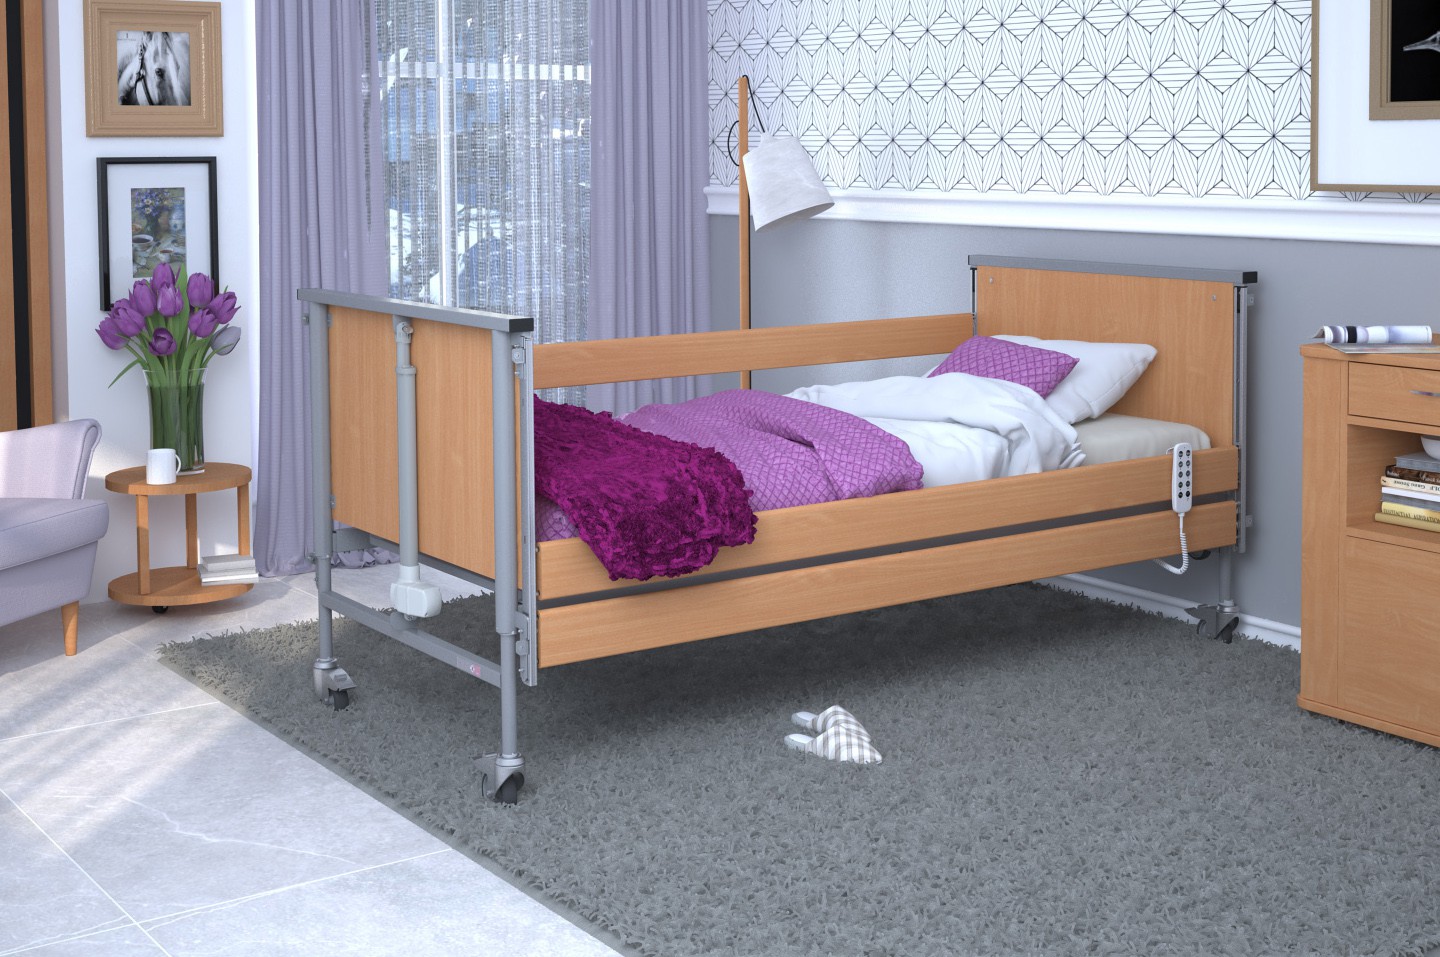 Łóżko rehabilitacyjne TAURUS 2 regulowane RehaBed : Rodzaj leża - Drewniane, Standardowe kolory ramy łóżka - Buk, Stolik typu Tablet: - Nie, Wysięgnik (max odciążenie 80 kg): - Tak